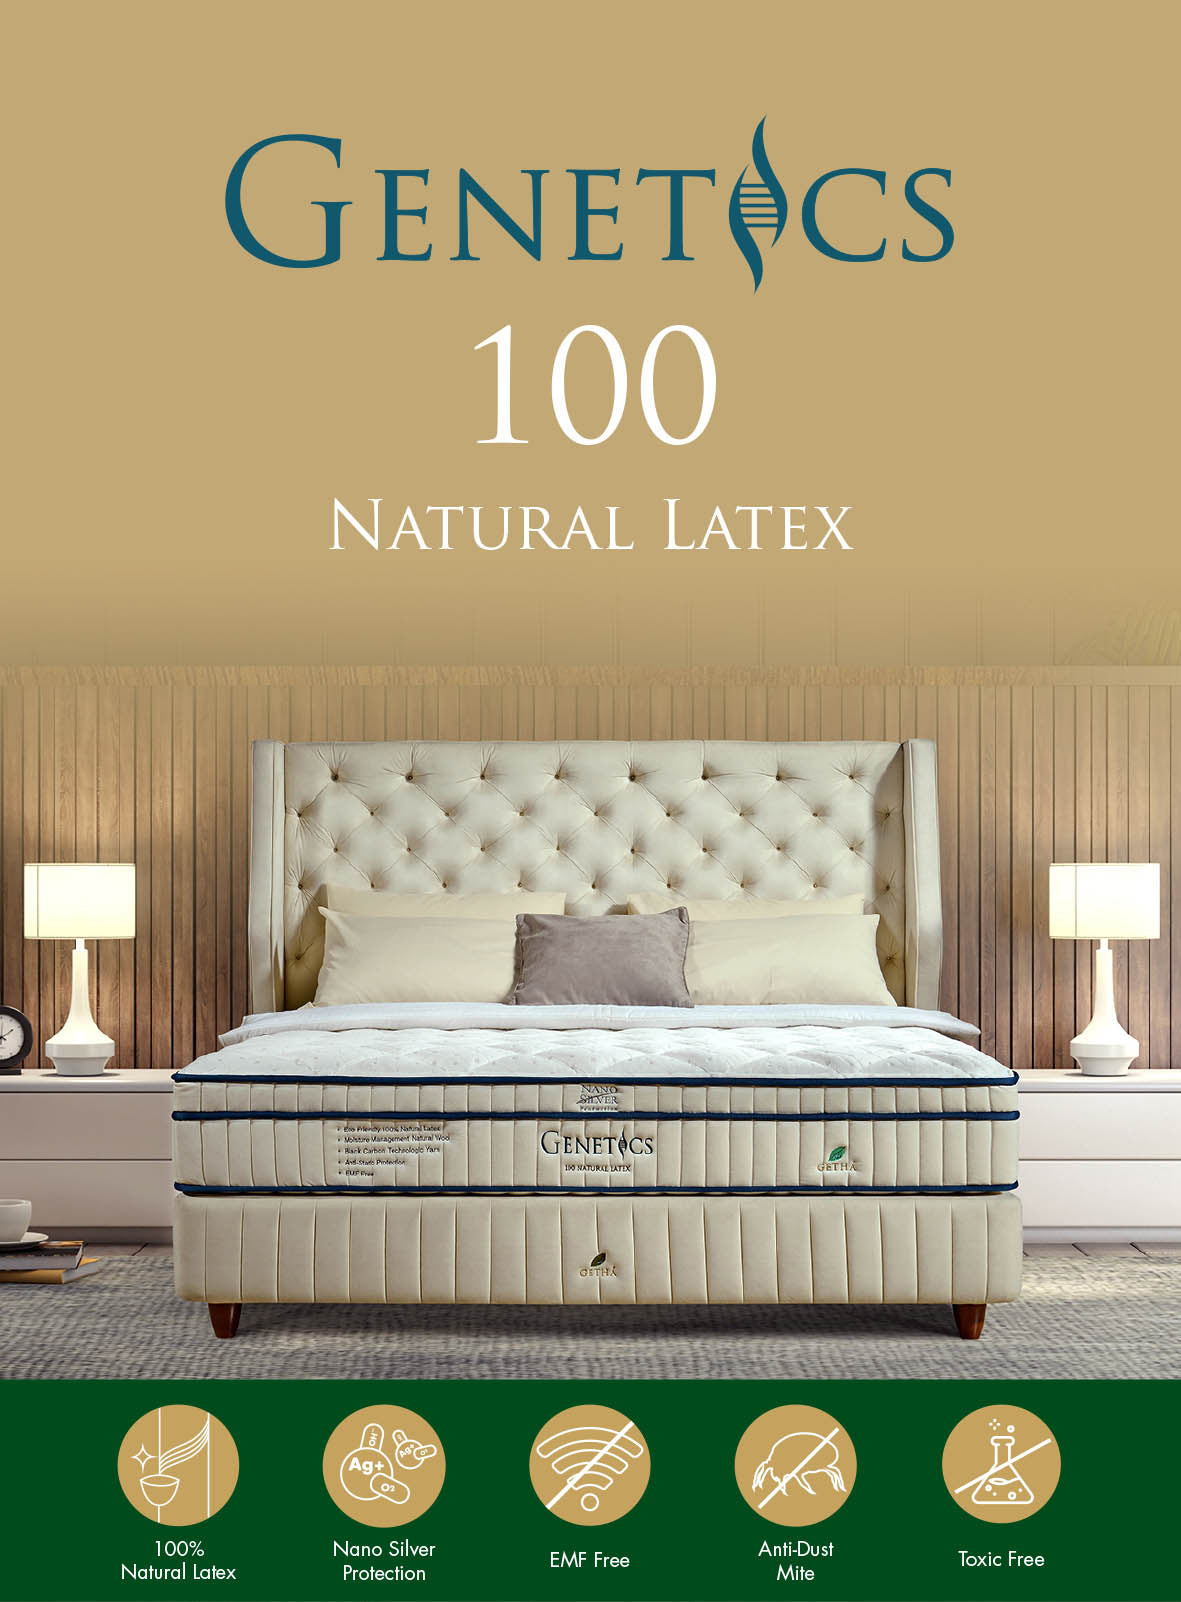 Genetics 100 Latex Mattress